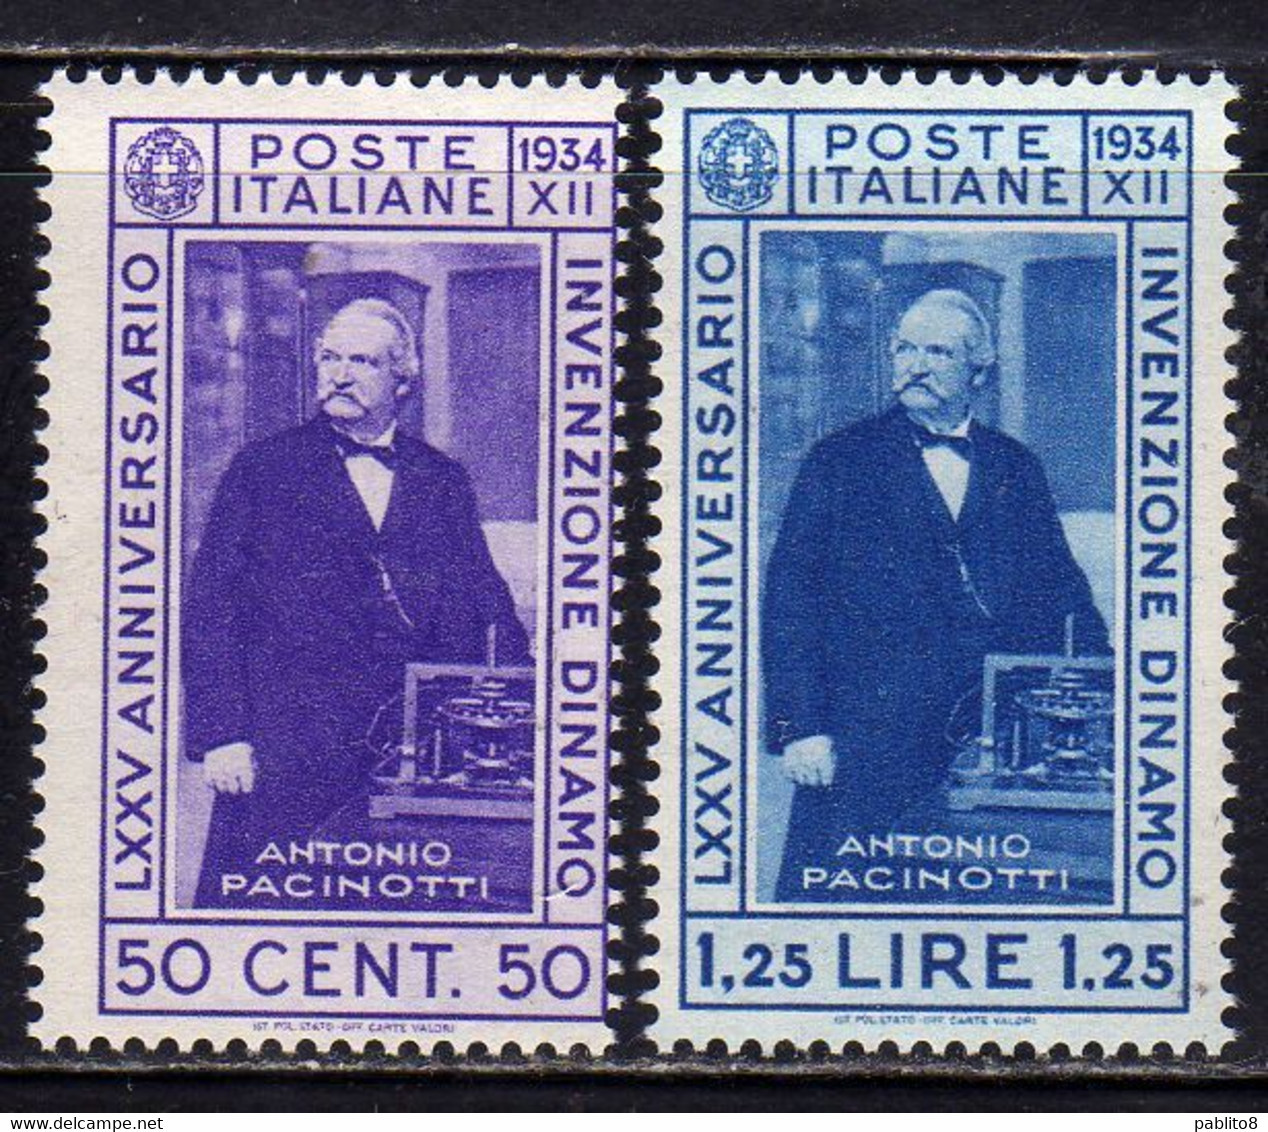 ITALIA REGNO ITALY KINGDOM 1934 INVENZIONE DELLA DINAMO PACINOTTI SERIE COMPLETA COMPLETE SET MNH - Nuevos